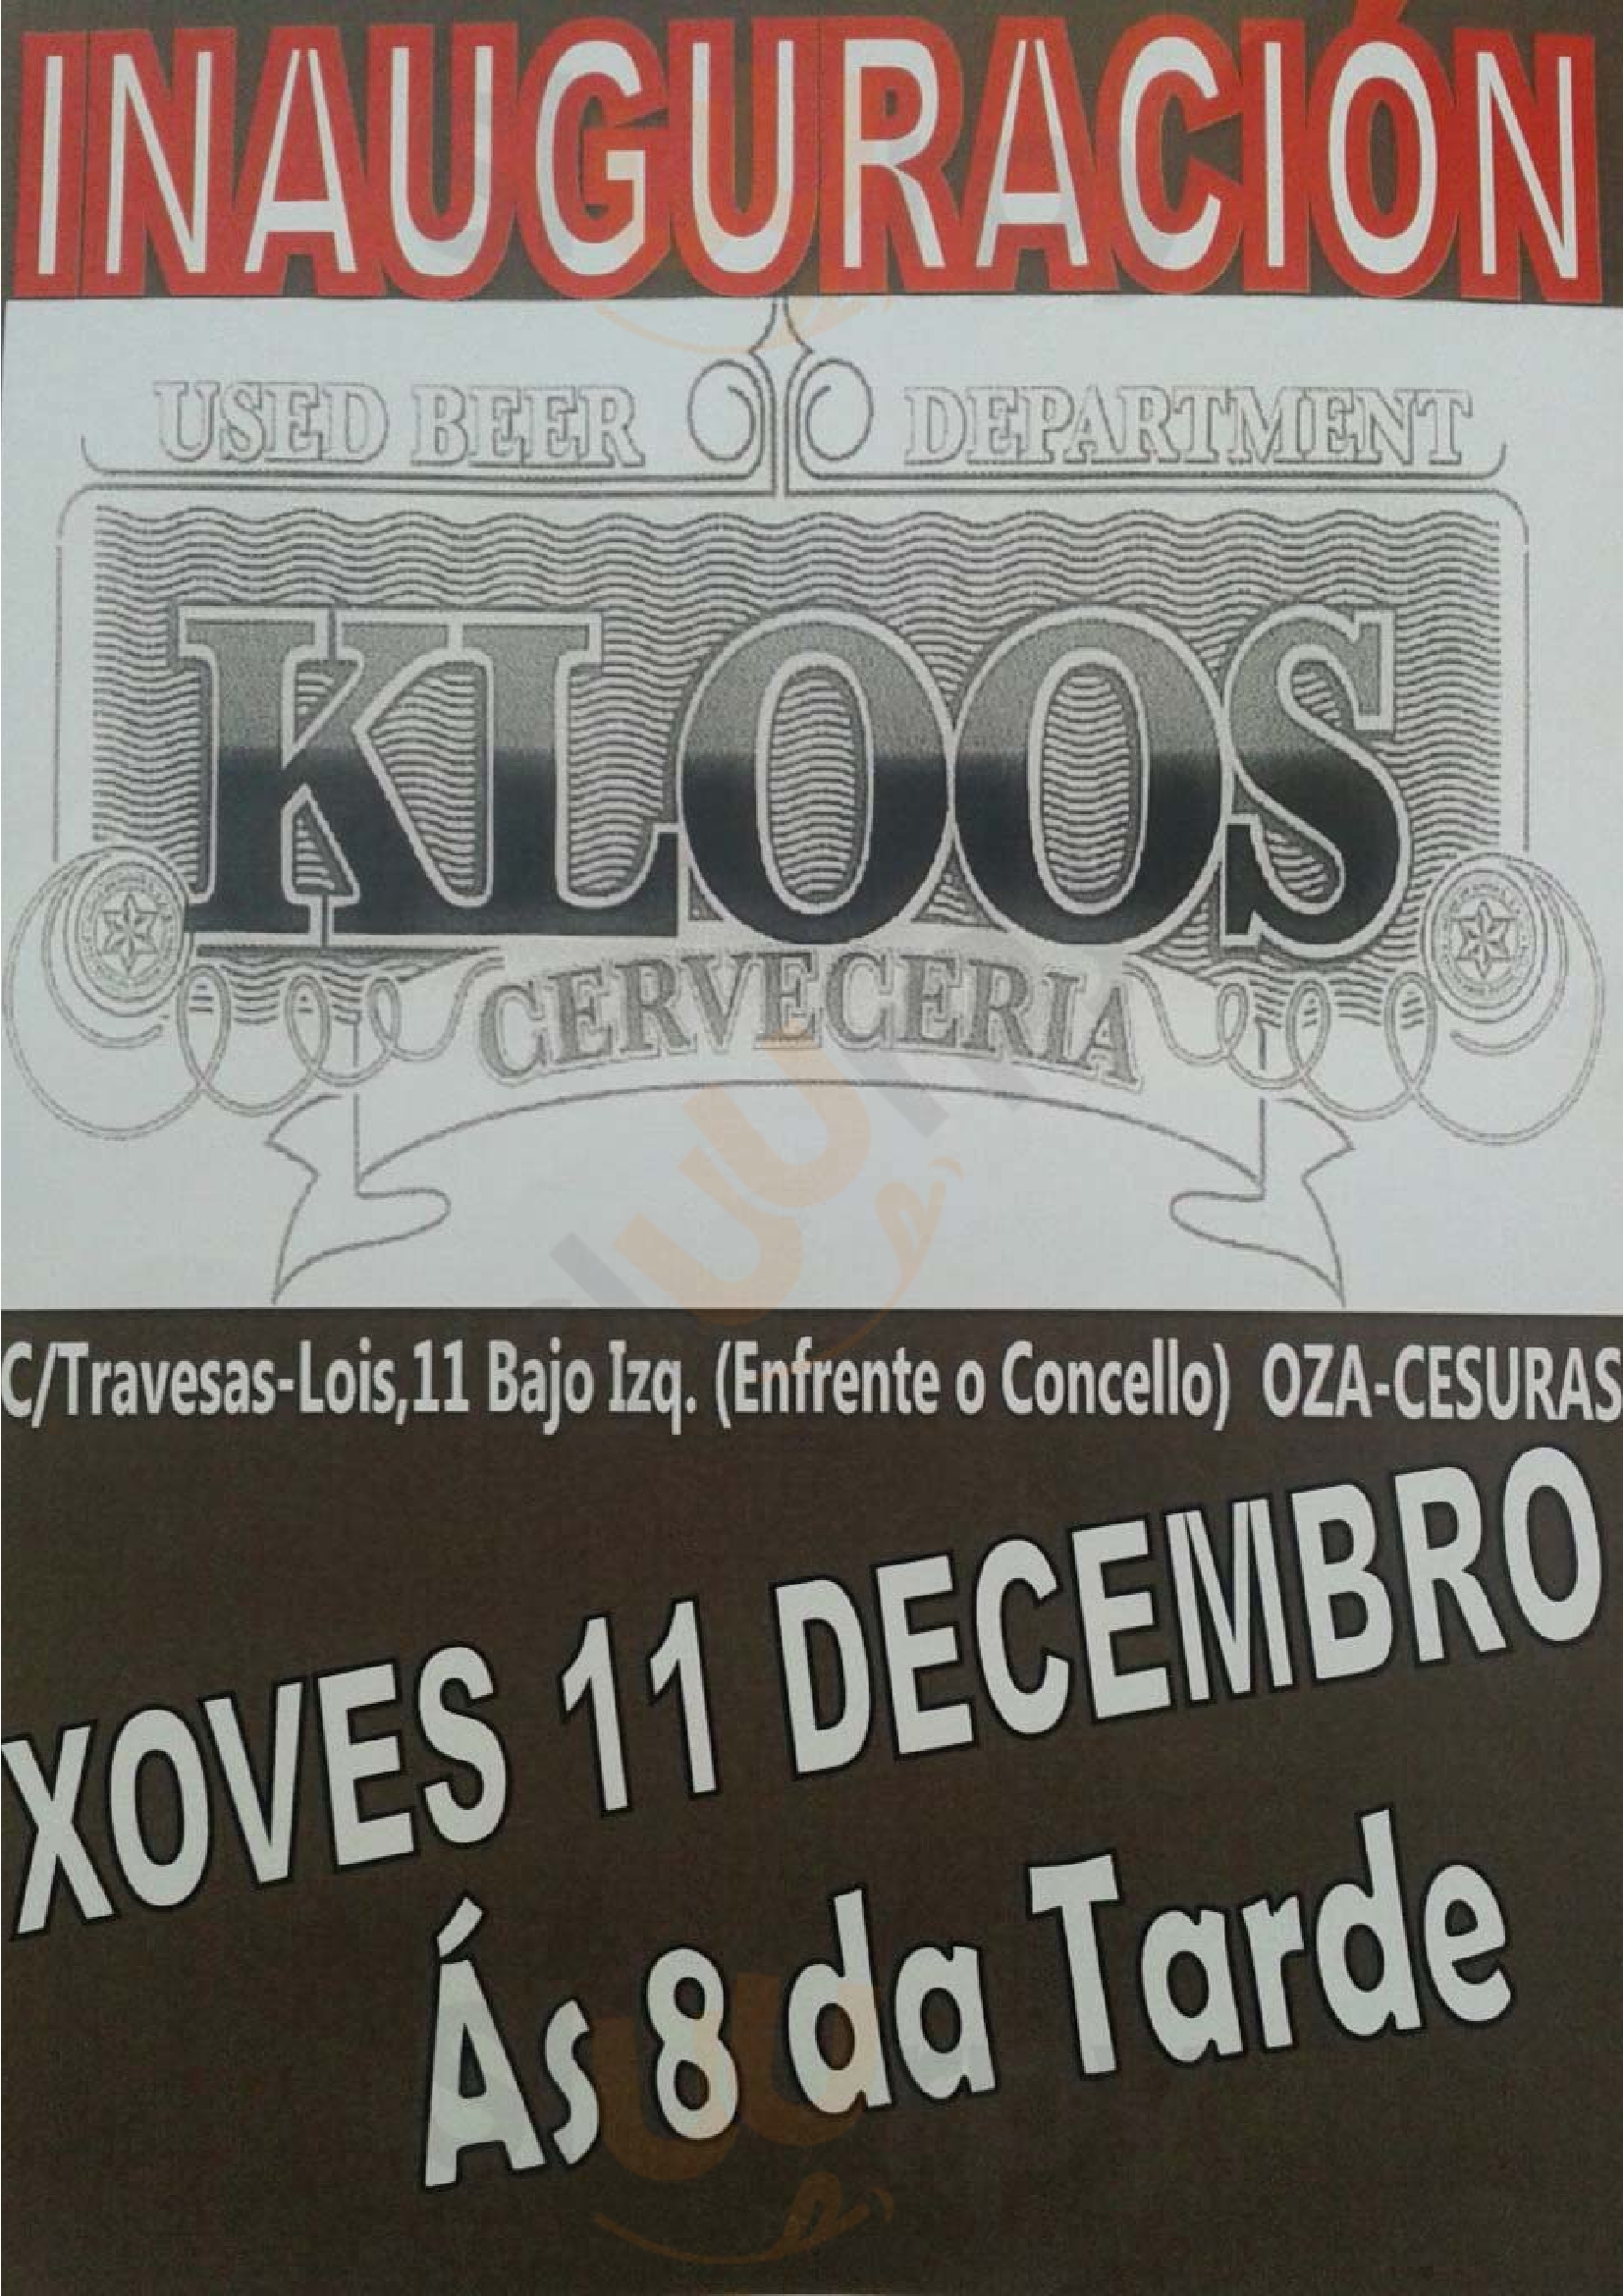 Cerveceria Kloos Oza de los Ríos Menu - 1